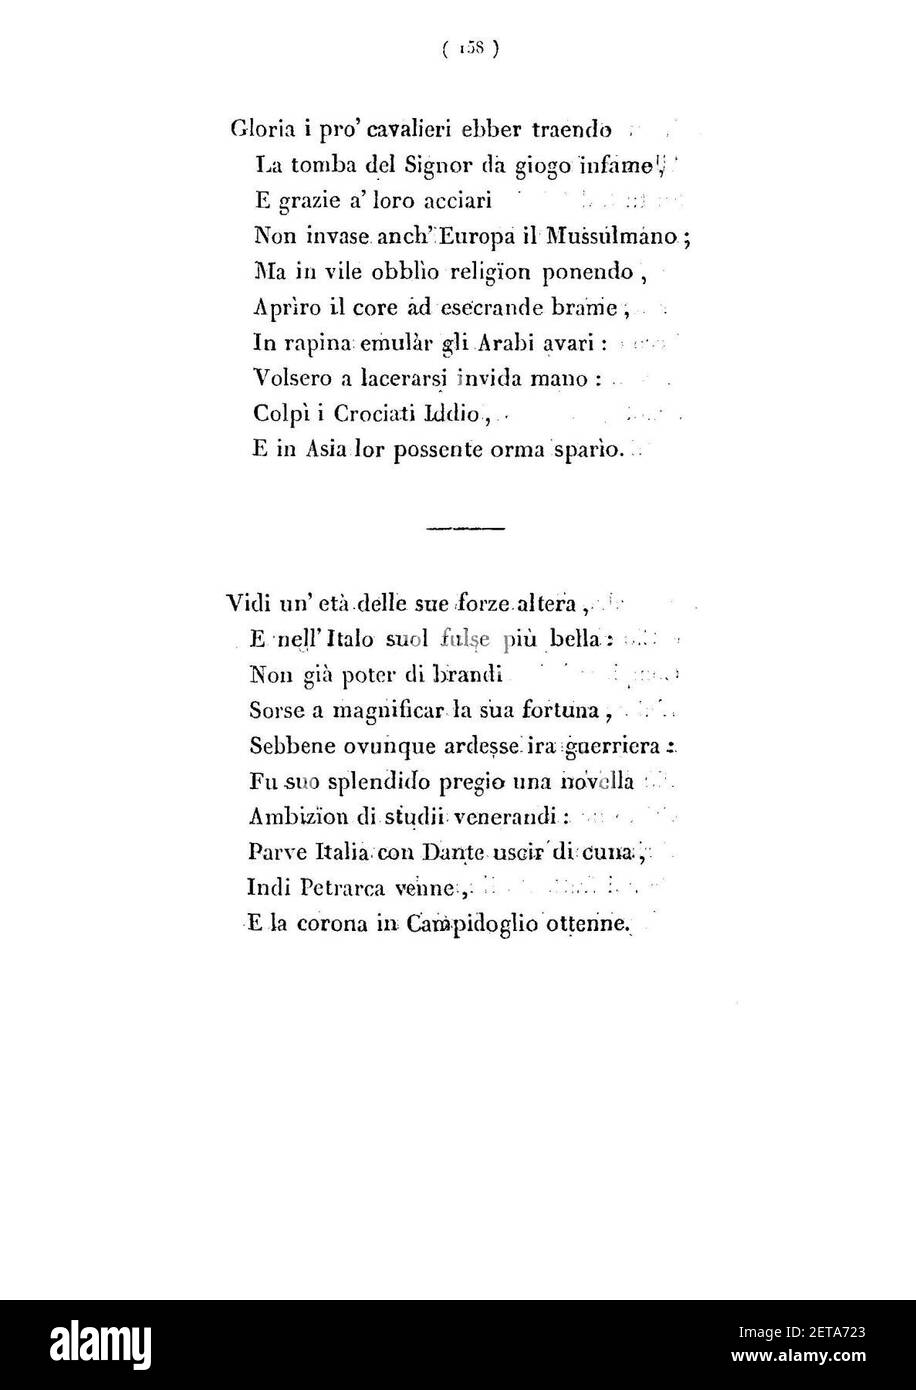 Pellico - Poesie inedite 159. Stock Photo